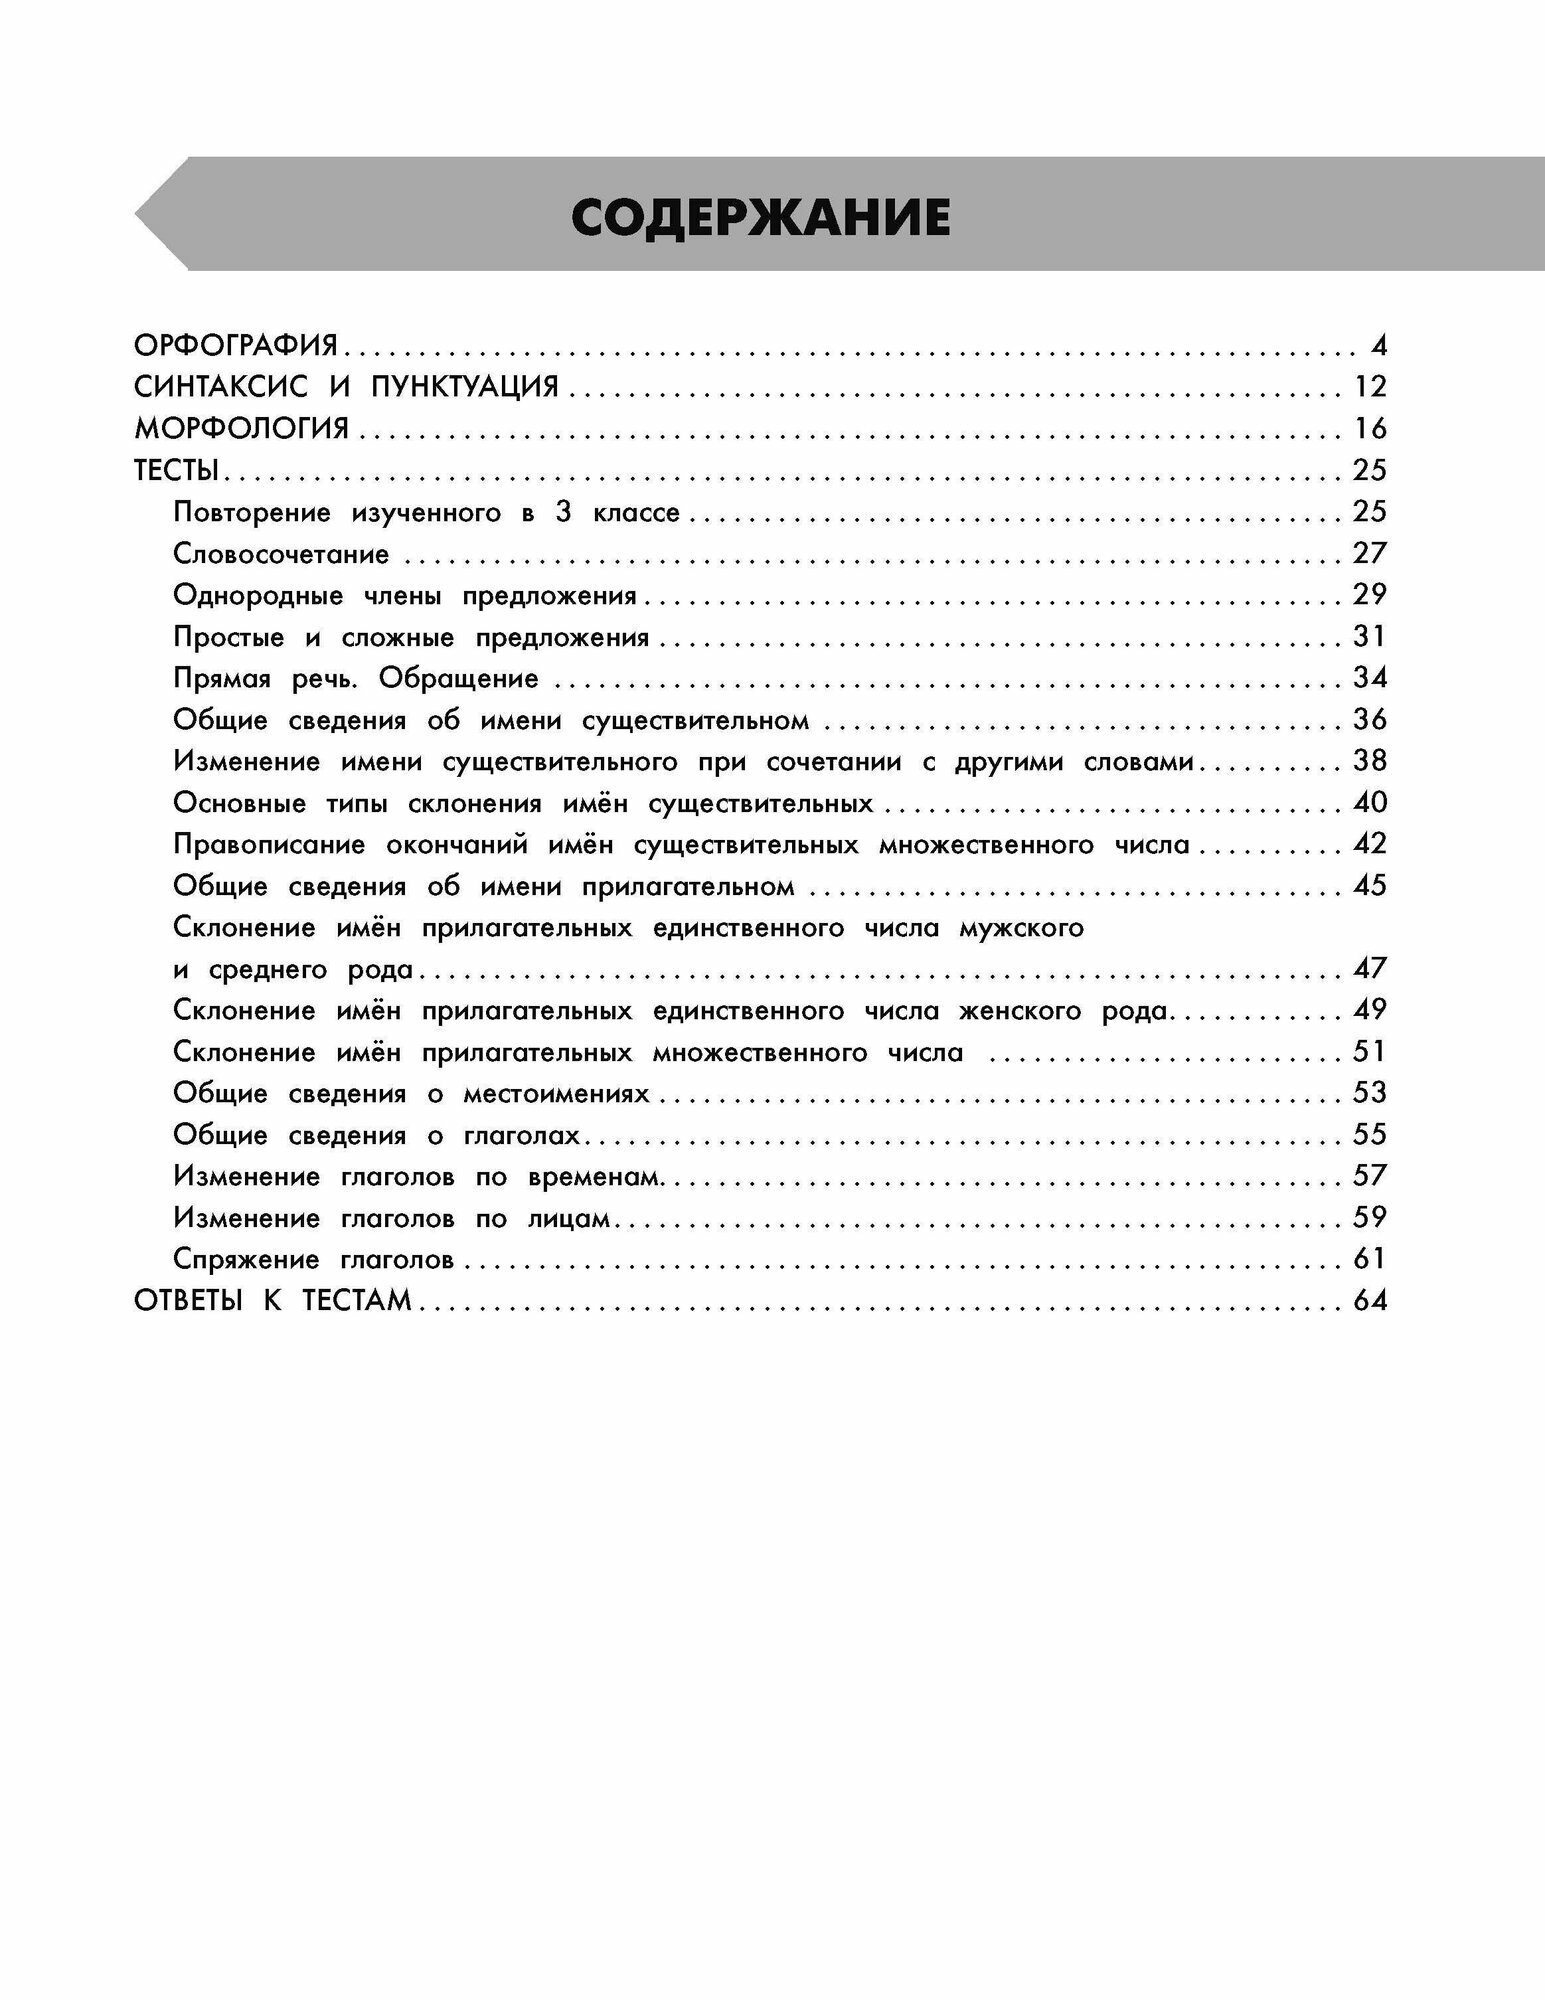 Русский язык в схемах и таблицах. Все темы школьного курса 4 класса с тестами. - фото №16